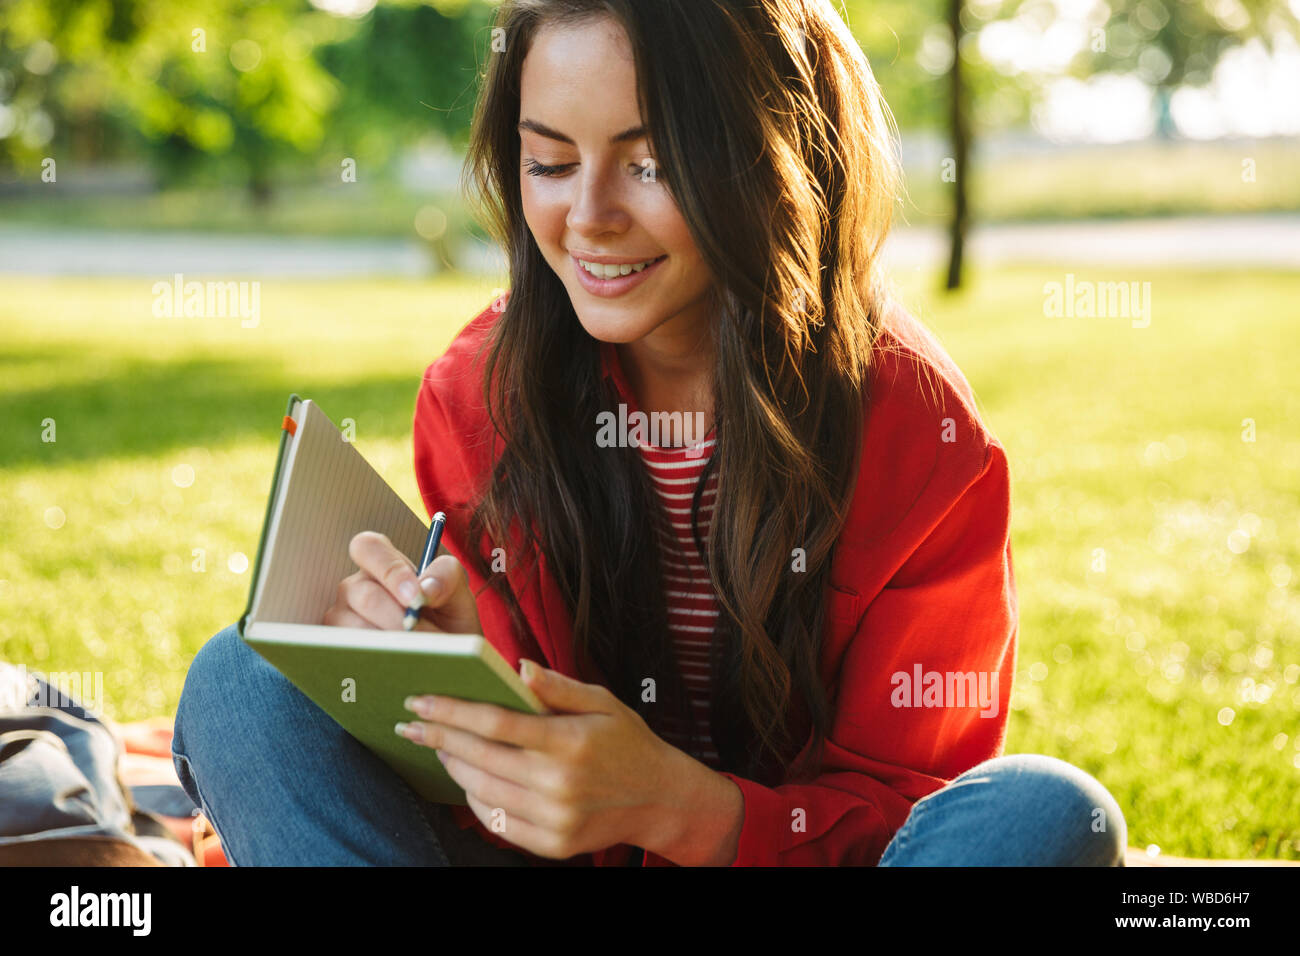 Bild der hübschen Mädchen Student trägt die rote Jacke lächelnd und Verfassen von Notizen Tagebuch während auf Decke im Green Park sitzen Stockfoto